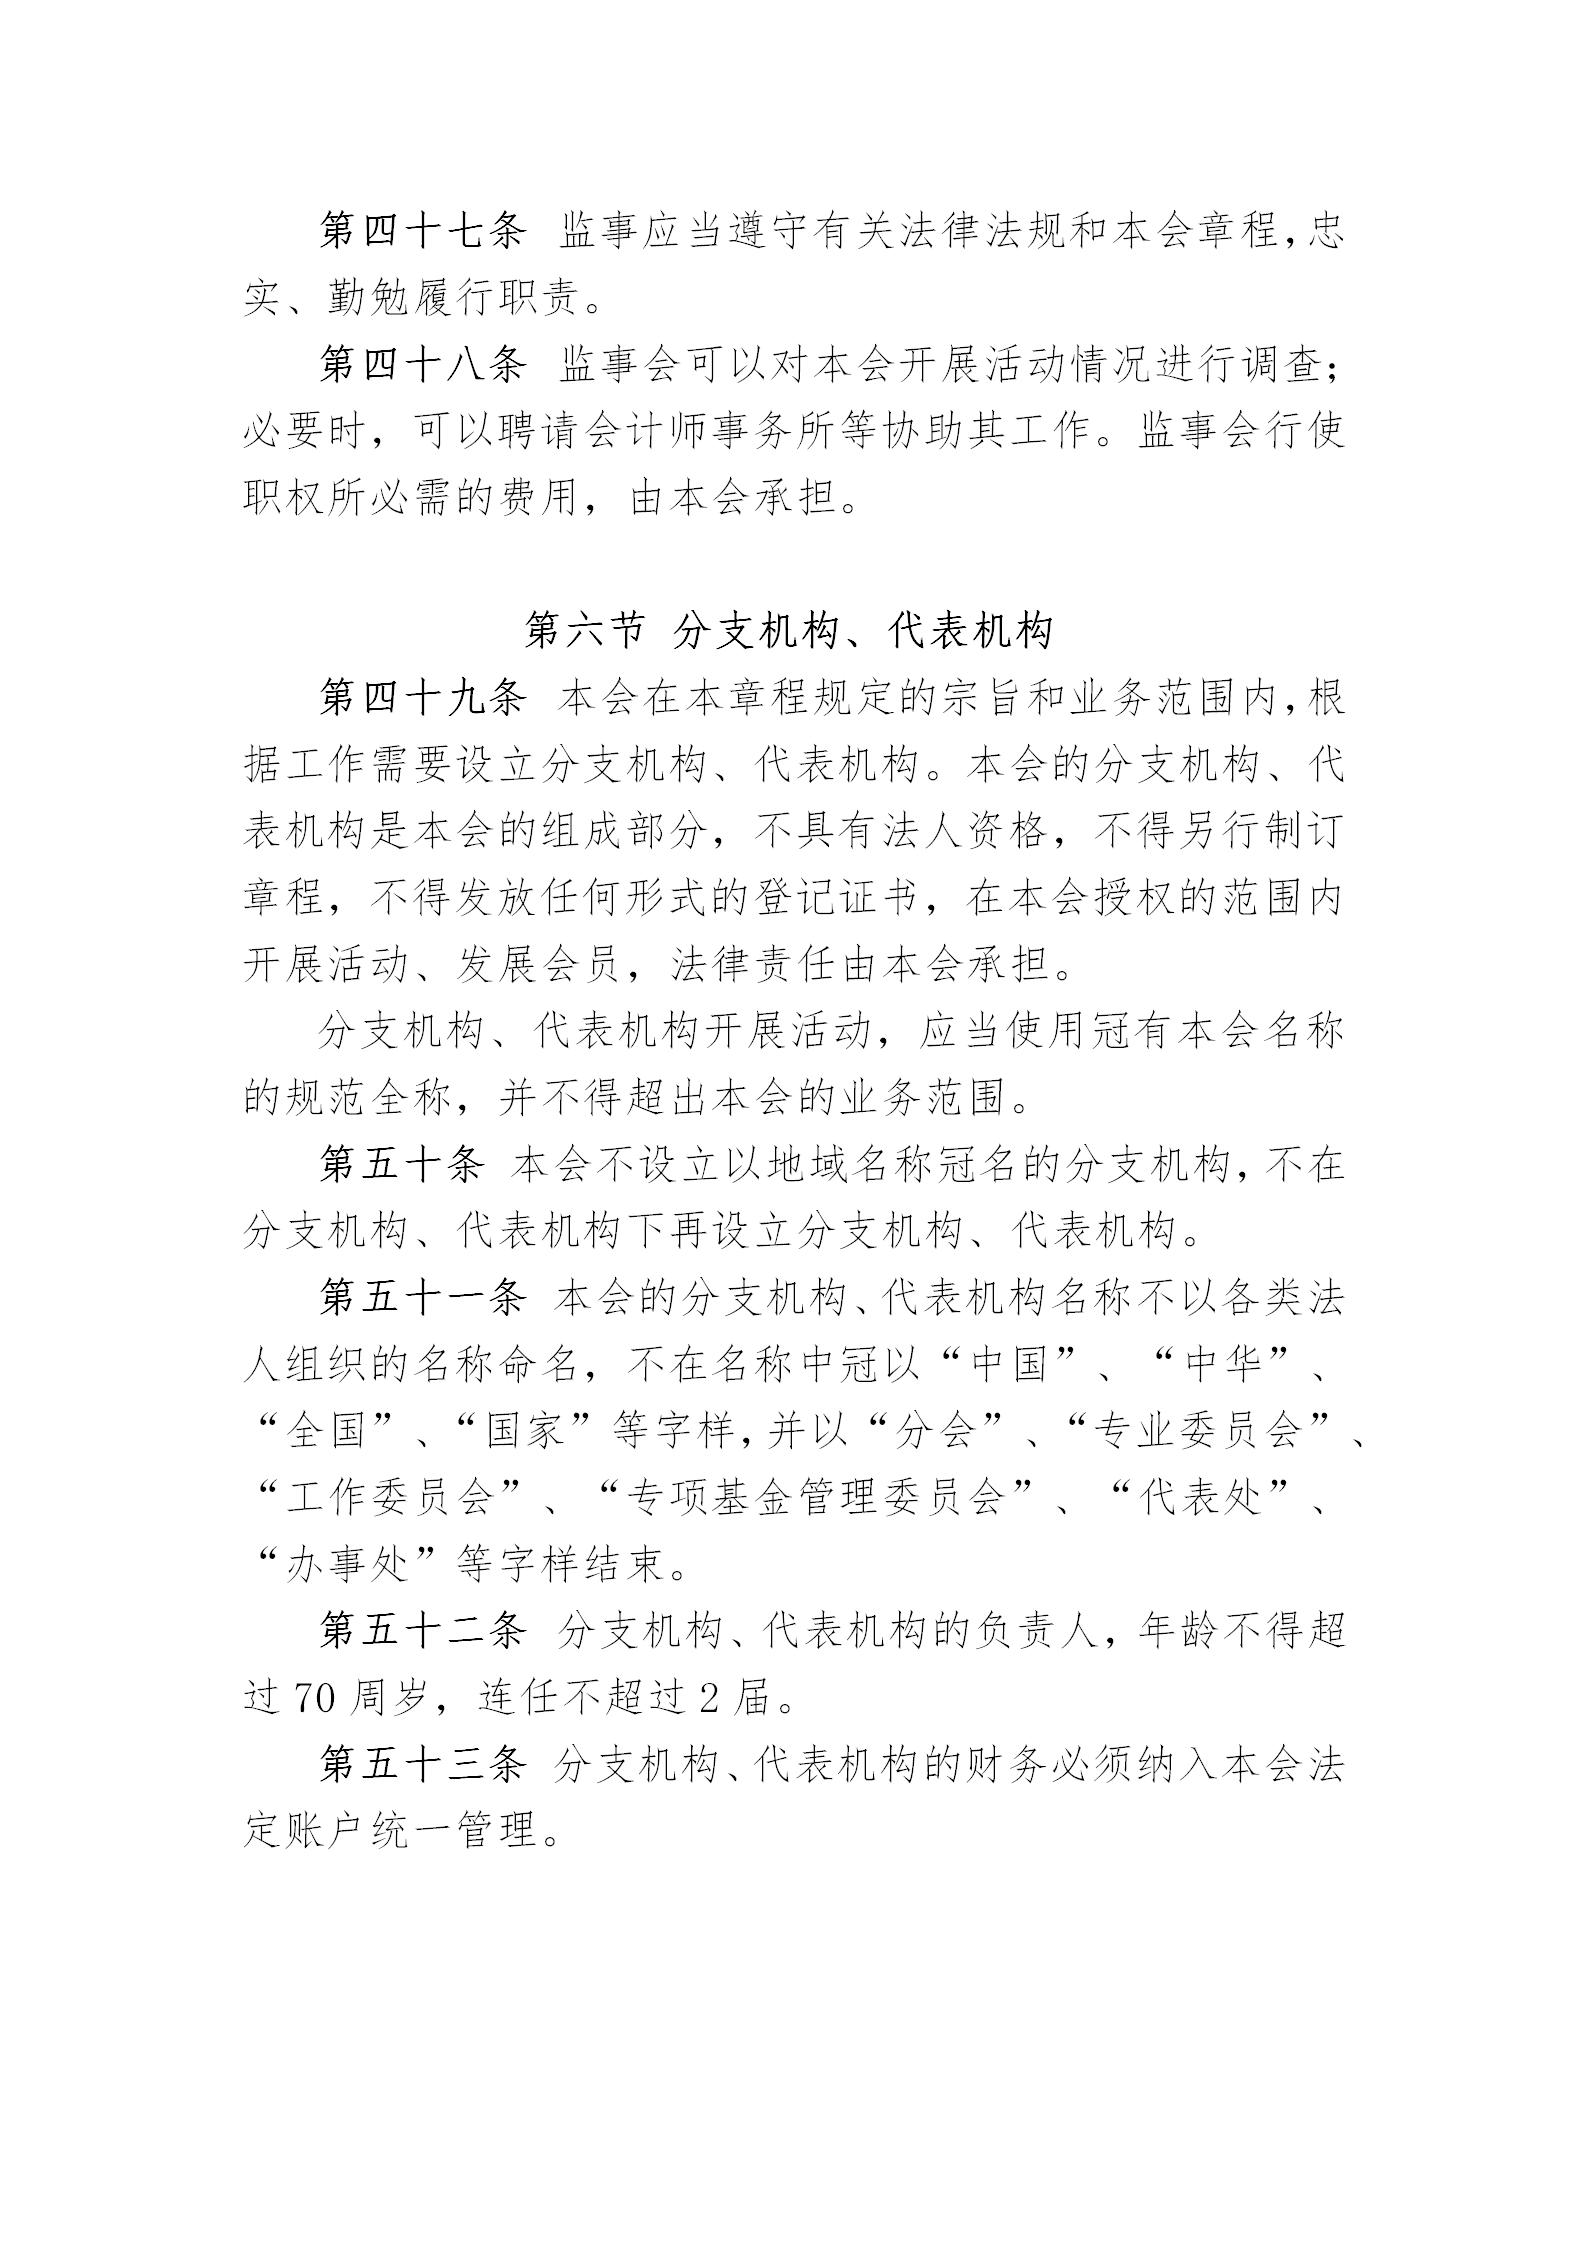 中国演艺设备技术协会章程(定稿)_14.jpg